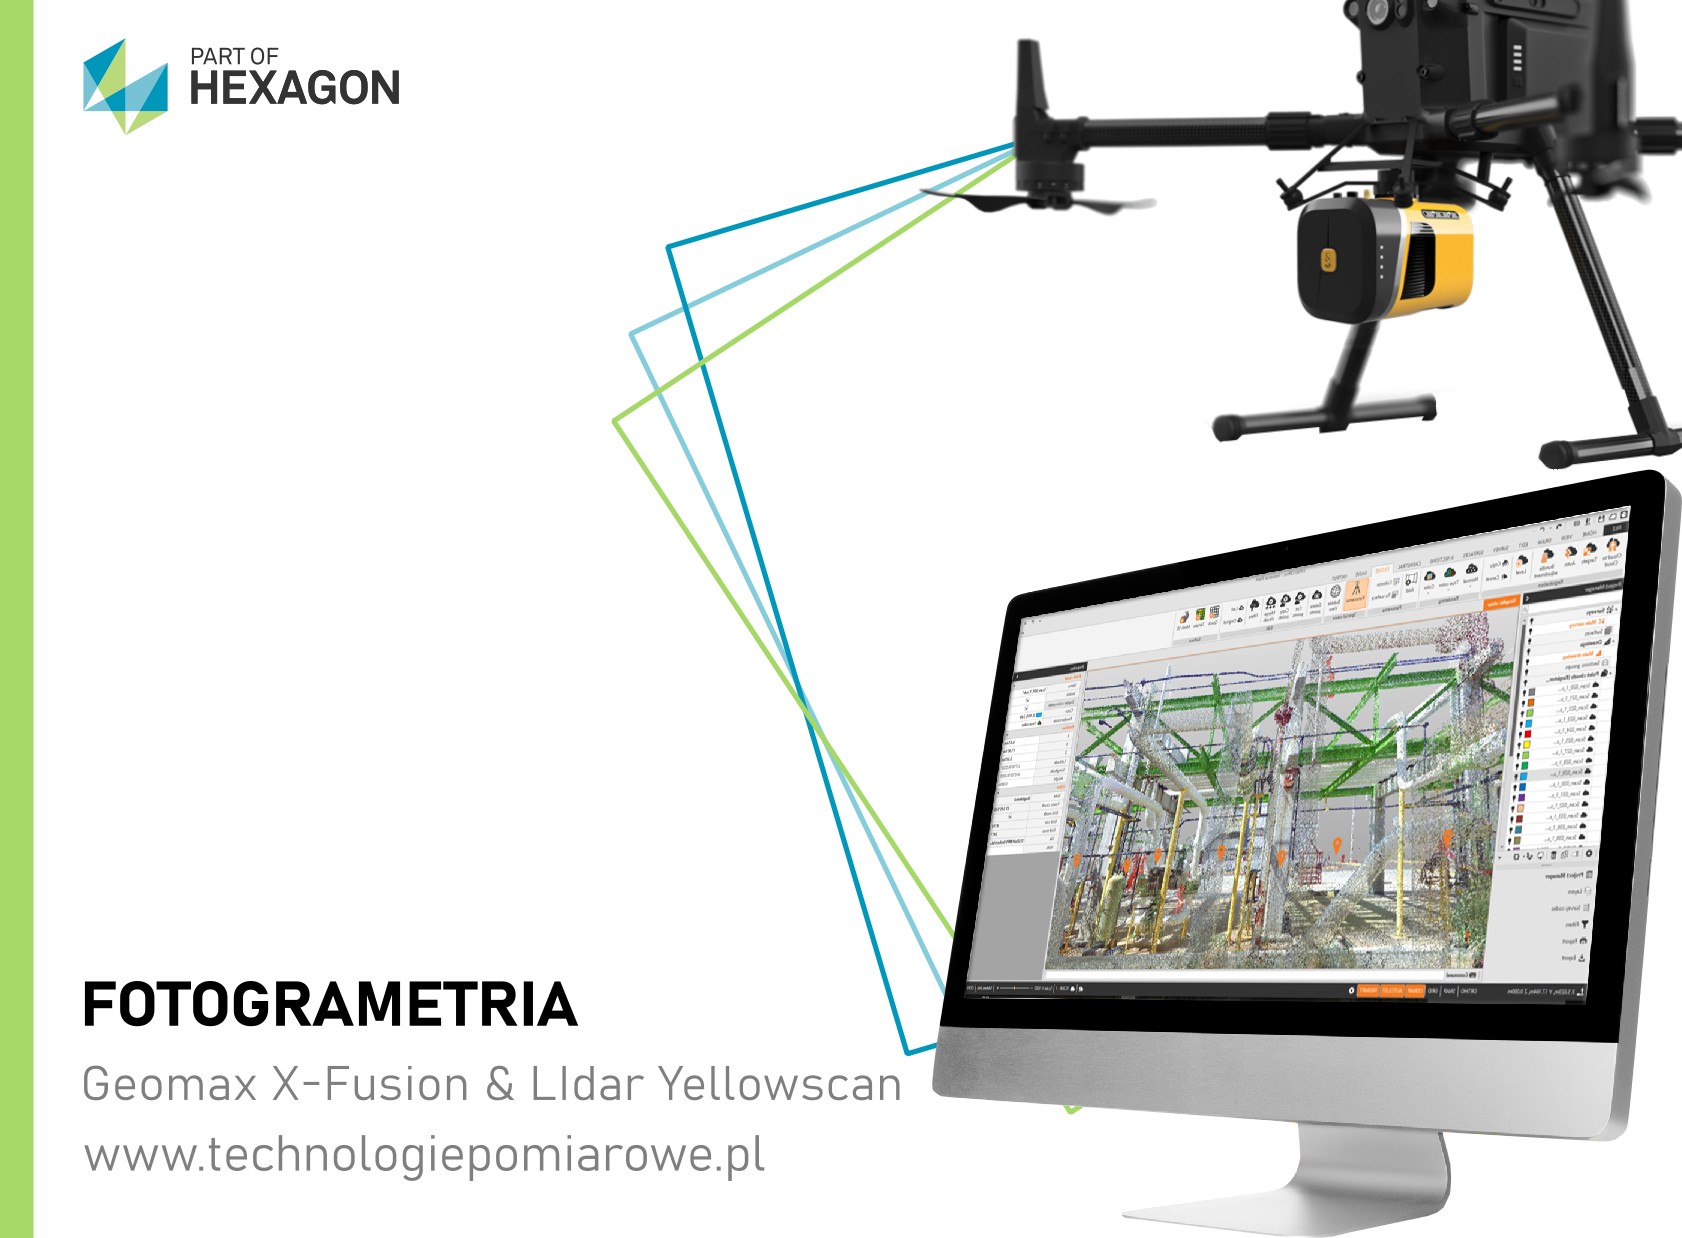 fotogrametria; drony; UAV; dron do fotogrametrii; geodezja; fotogrametria geodezyjna; fotogrametria dron; dron geodezyjny; geodezja UAV; fotogrametria z drona; DJI Matrice 350 RTK; Matrice 30T; Zenmuse L1, Mavic 3 Enterprice; drona dla fotogrametrii i geodezji; dron dla geodezji; fotogrametria z UAV; co to jest fotogrametria lotnicza; co to jest fotogrametria geodezyjna; dron geodezyjny cena; dron geodezyjny promocja; oprogramowanie fotogrametryczne; szkolenie fotogrametryczne; szkolenia z fotogrametrii geodezyjnej; szkolenia UAV; kurs szkolenie dron; naloty geodezyjne drone; fotogrametria; ortofotomapa geodezyjna; naloty dronem geodezja; naloty dronem fotogrametria; zesta do fotogrametrii; dron do pomiarów geodezyjnych; pomiary mas ziemnych z drona; jaki dron dla geodezji; gdzie kupiuć dron do geodezji; gdzie kupić dron dla geodezji; Bezzałogowe aparaty latające UAV; Ortofotomapa; dron w budownictwie; Fotogrametria za pomocą drona; Drony w geodezji; dron dla geodezji; dron dla budownictwa; dron dla przemysłu; dron dla rolnictwa; Dron geodezyjny cena; Mapowanie terenu dronem cena; Jaki dron do geodezji; Phantom 4 RTK; Dron RTK; Moduł RTK do drona; Sklep z dronami; Agro dron; Dron geodezyjny cena; Jaki dron do geodezji; Mapowanie terenu dronem cena; Phantom 4 RTK; Moduł RTK do drona; Dron RTK; Opryski dronem; Urzadzenie do pomiaru geodezyjnego; Aplikacja do sterowania dronem po polsku; Uniwersalną aplikacja do drona; Darmowy program do fotogrametrii; Darmowa aplikacja do sterowania dronem; Litchi Instrukcja PL; Aplikacja do drona DJI; Aplikacja do drona DJI Mini 2; Jak połączyć drona z telefonem; Phantom 4 RTK; Dron geodezyjny cena; Dron RTK; Moduł RTK do drona; Najdroższy dron DJI; Dron udźwig 200 kg; Parametry transportowe drona; Dron do 25 kg; LIDAR mapa Polski; Google Maps LiDAR; Geoportal LIDAR; LIDAR mapy jak przeglądać mapy lidar; LIDAR mapy na Androida; Geoportal Lidar aplikacja; LiDAR Maps online;